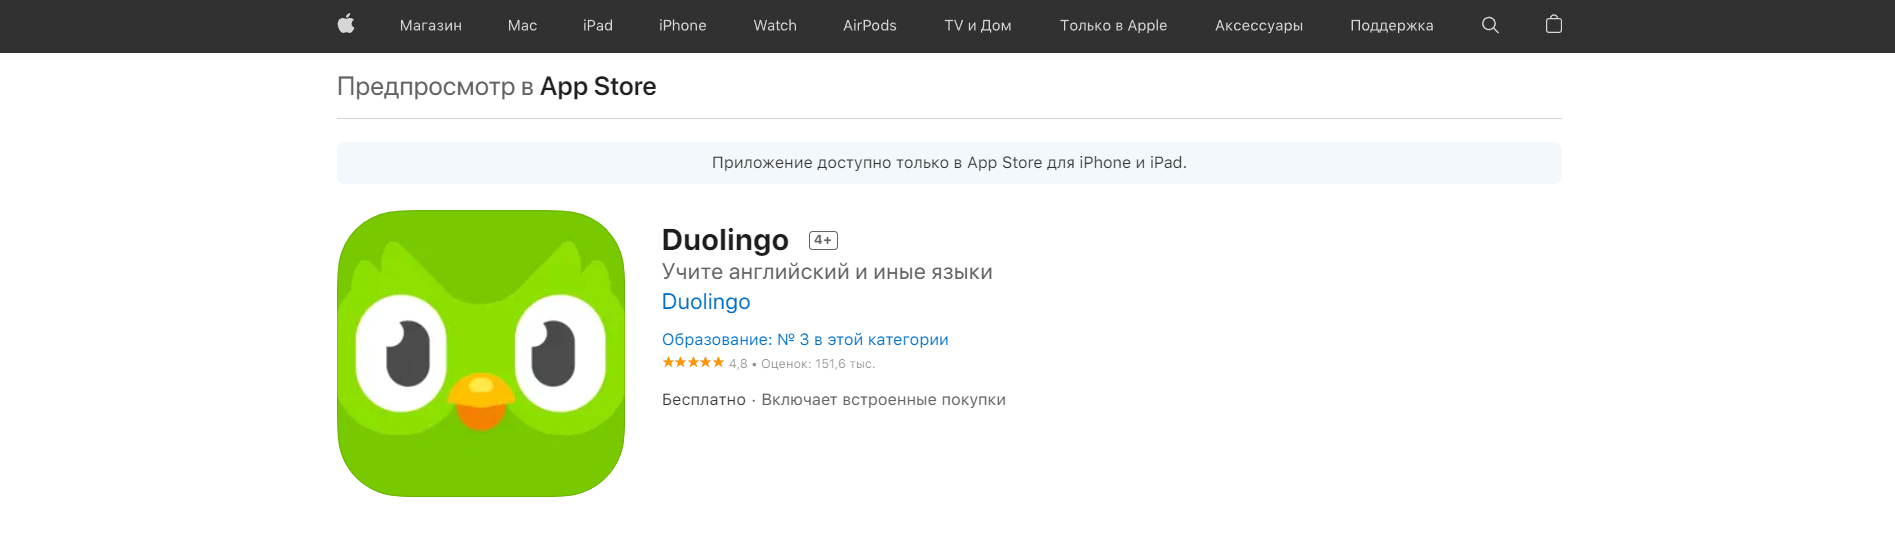 Скачать Приложение Duolingo на iOS